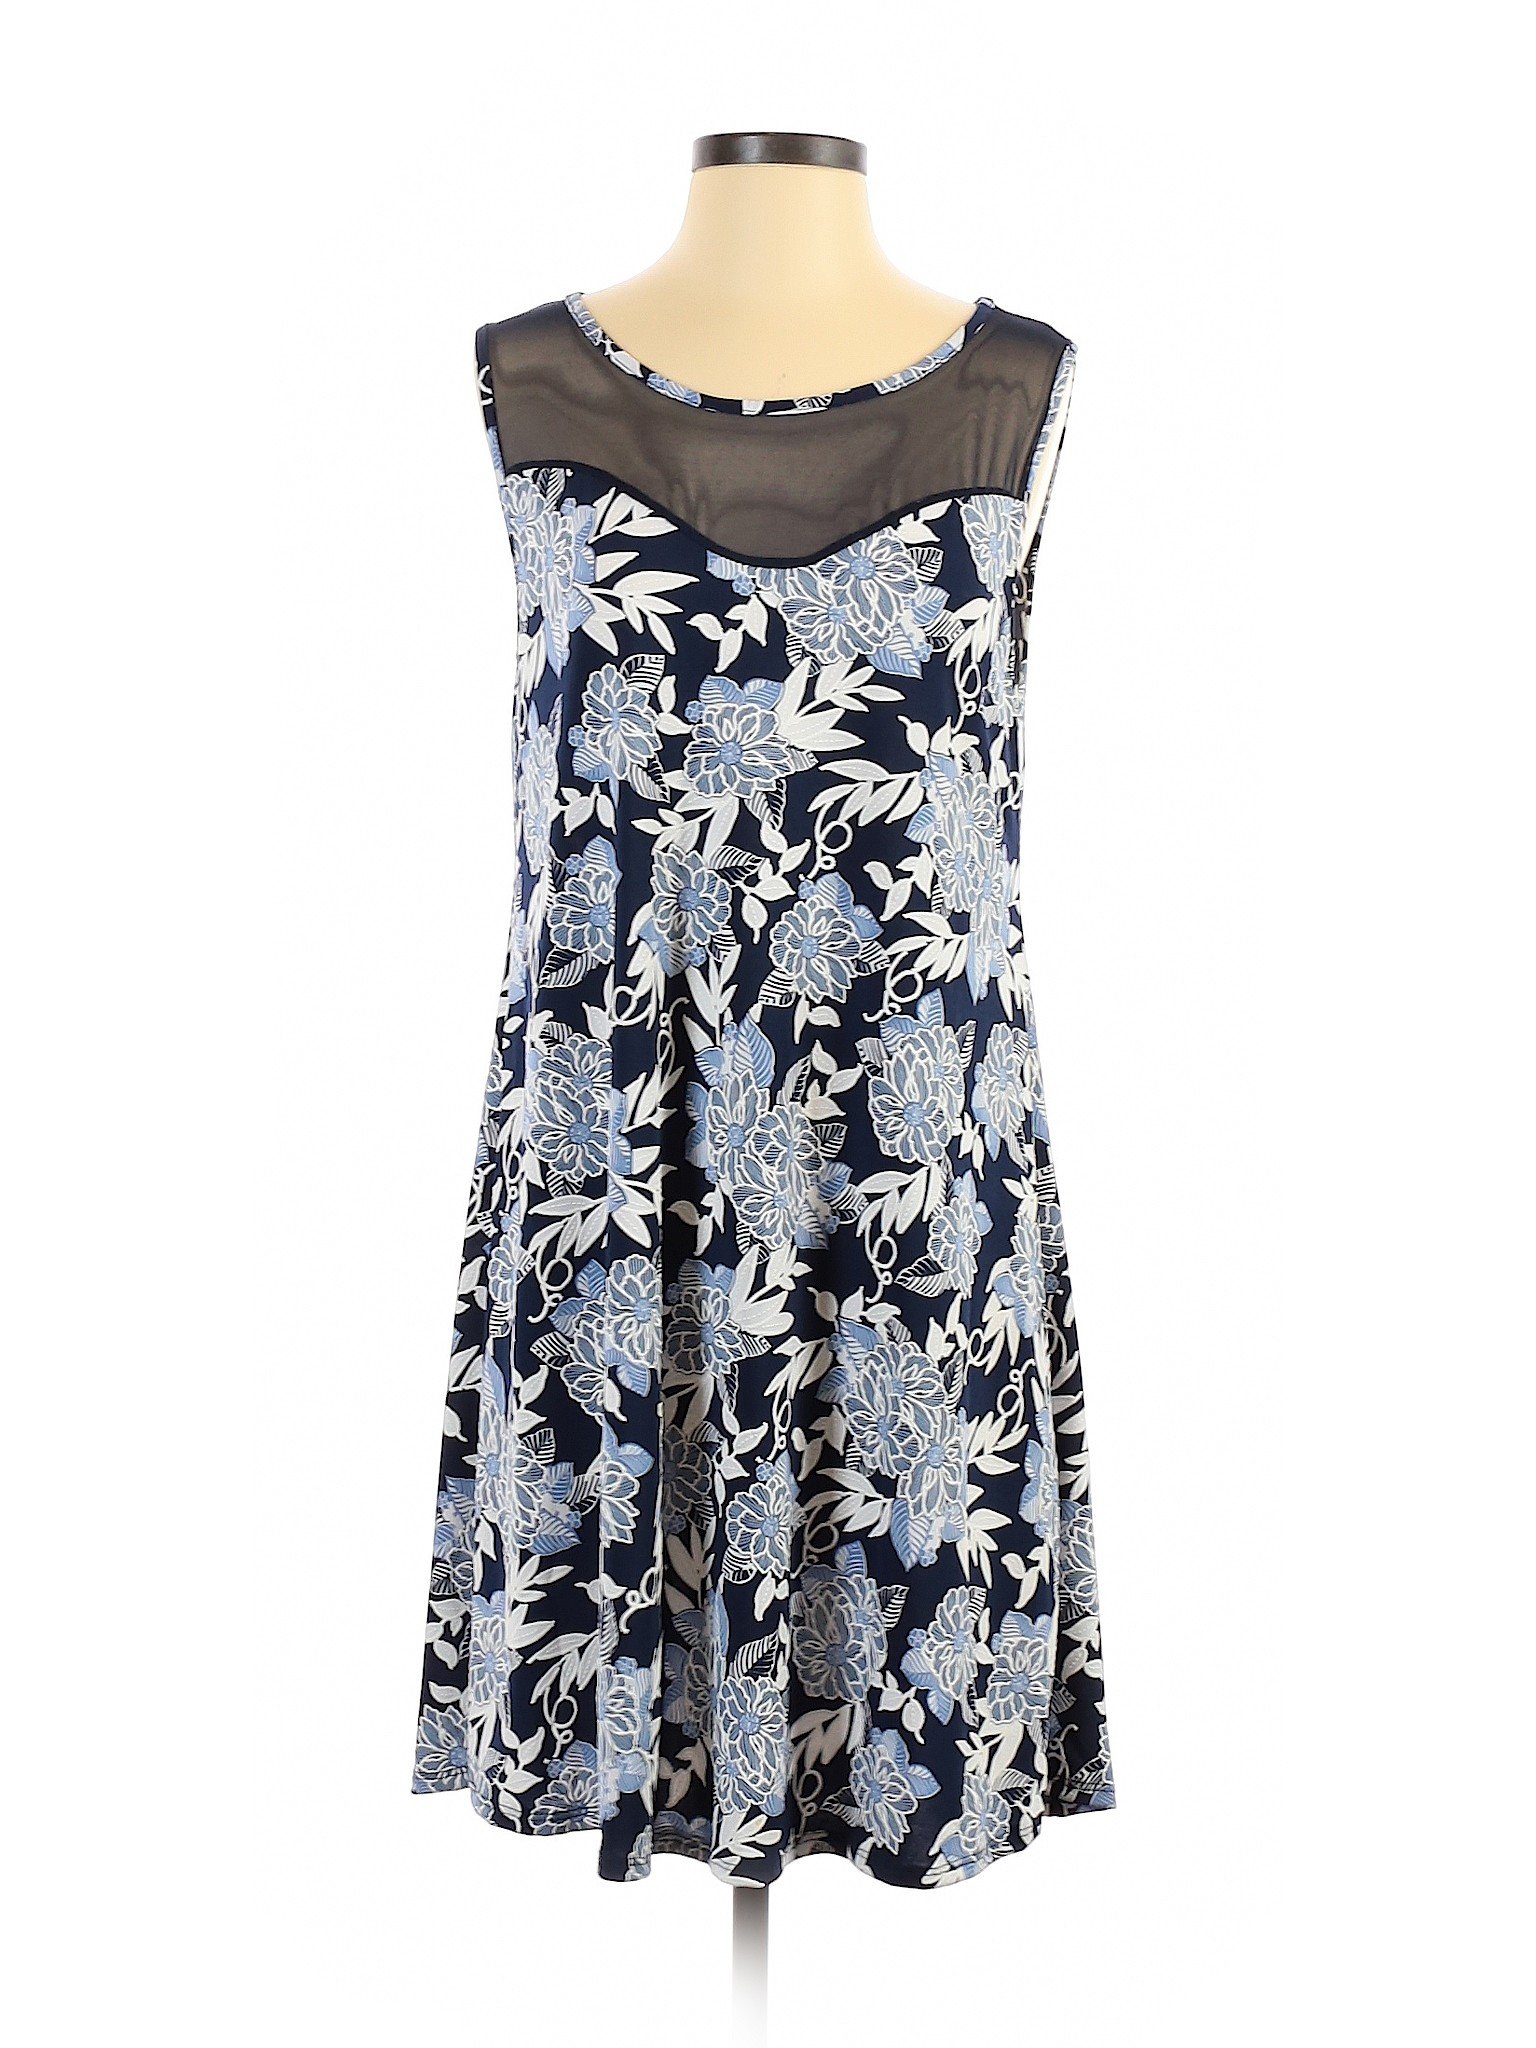 SJS Women Blue Casual Dress M | eBay